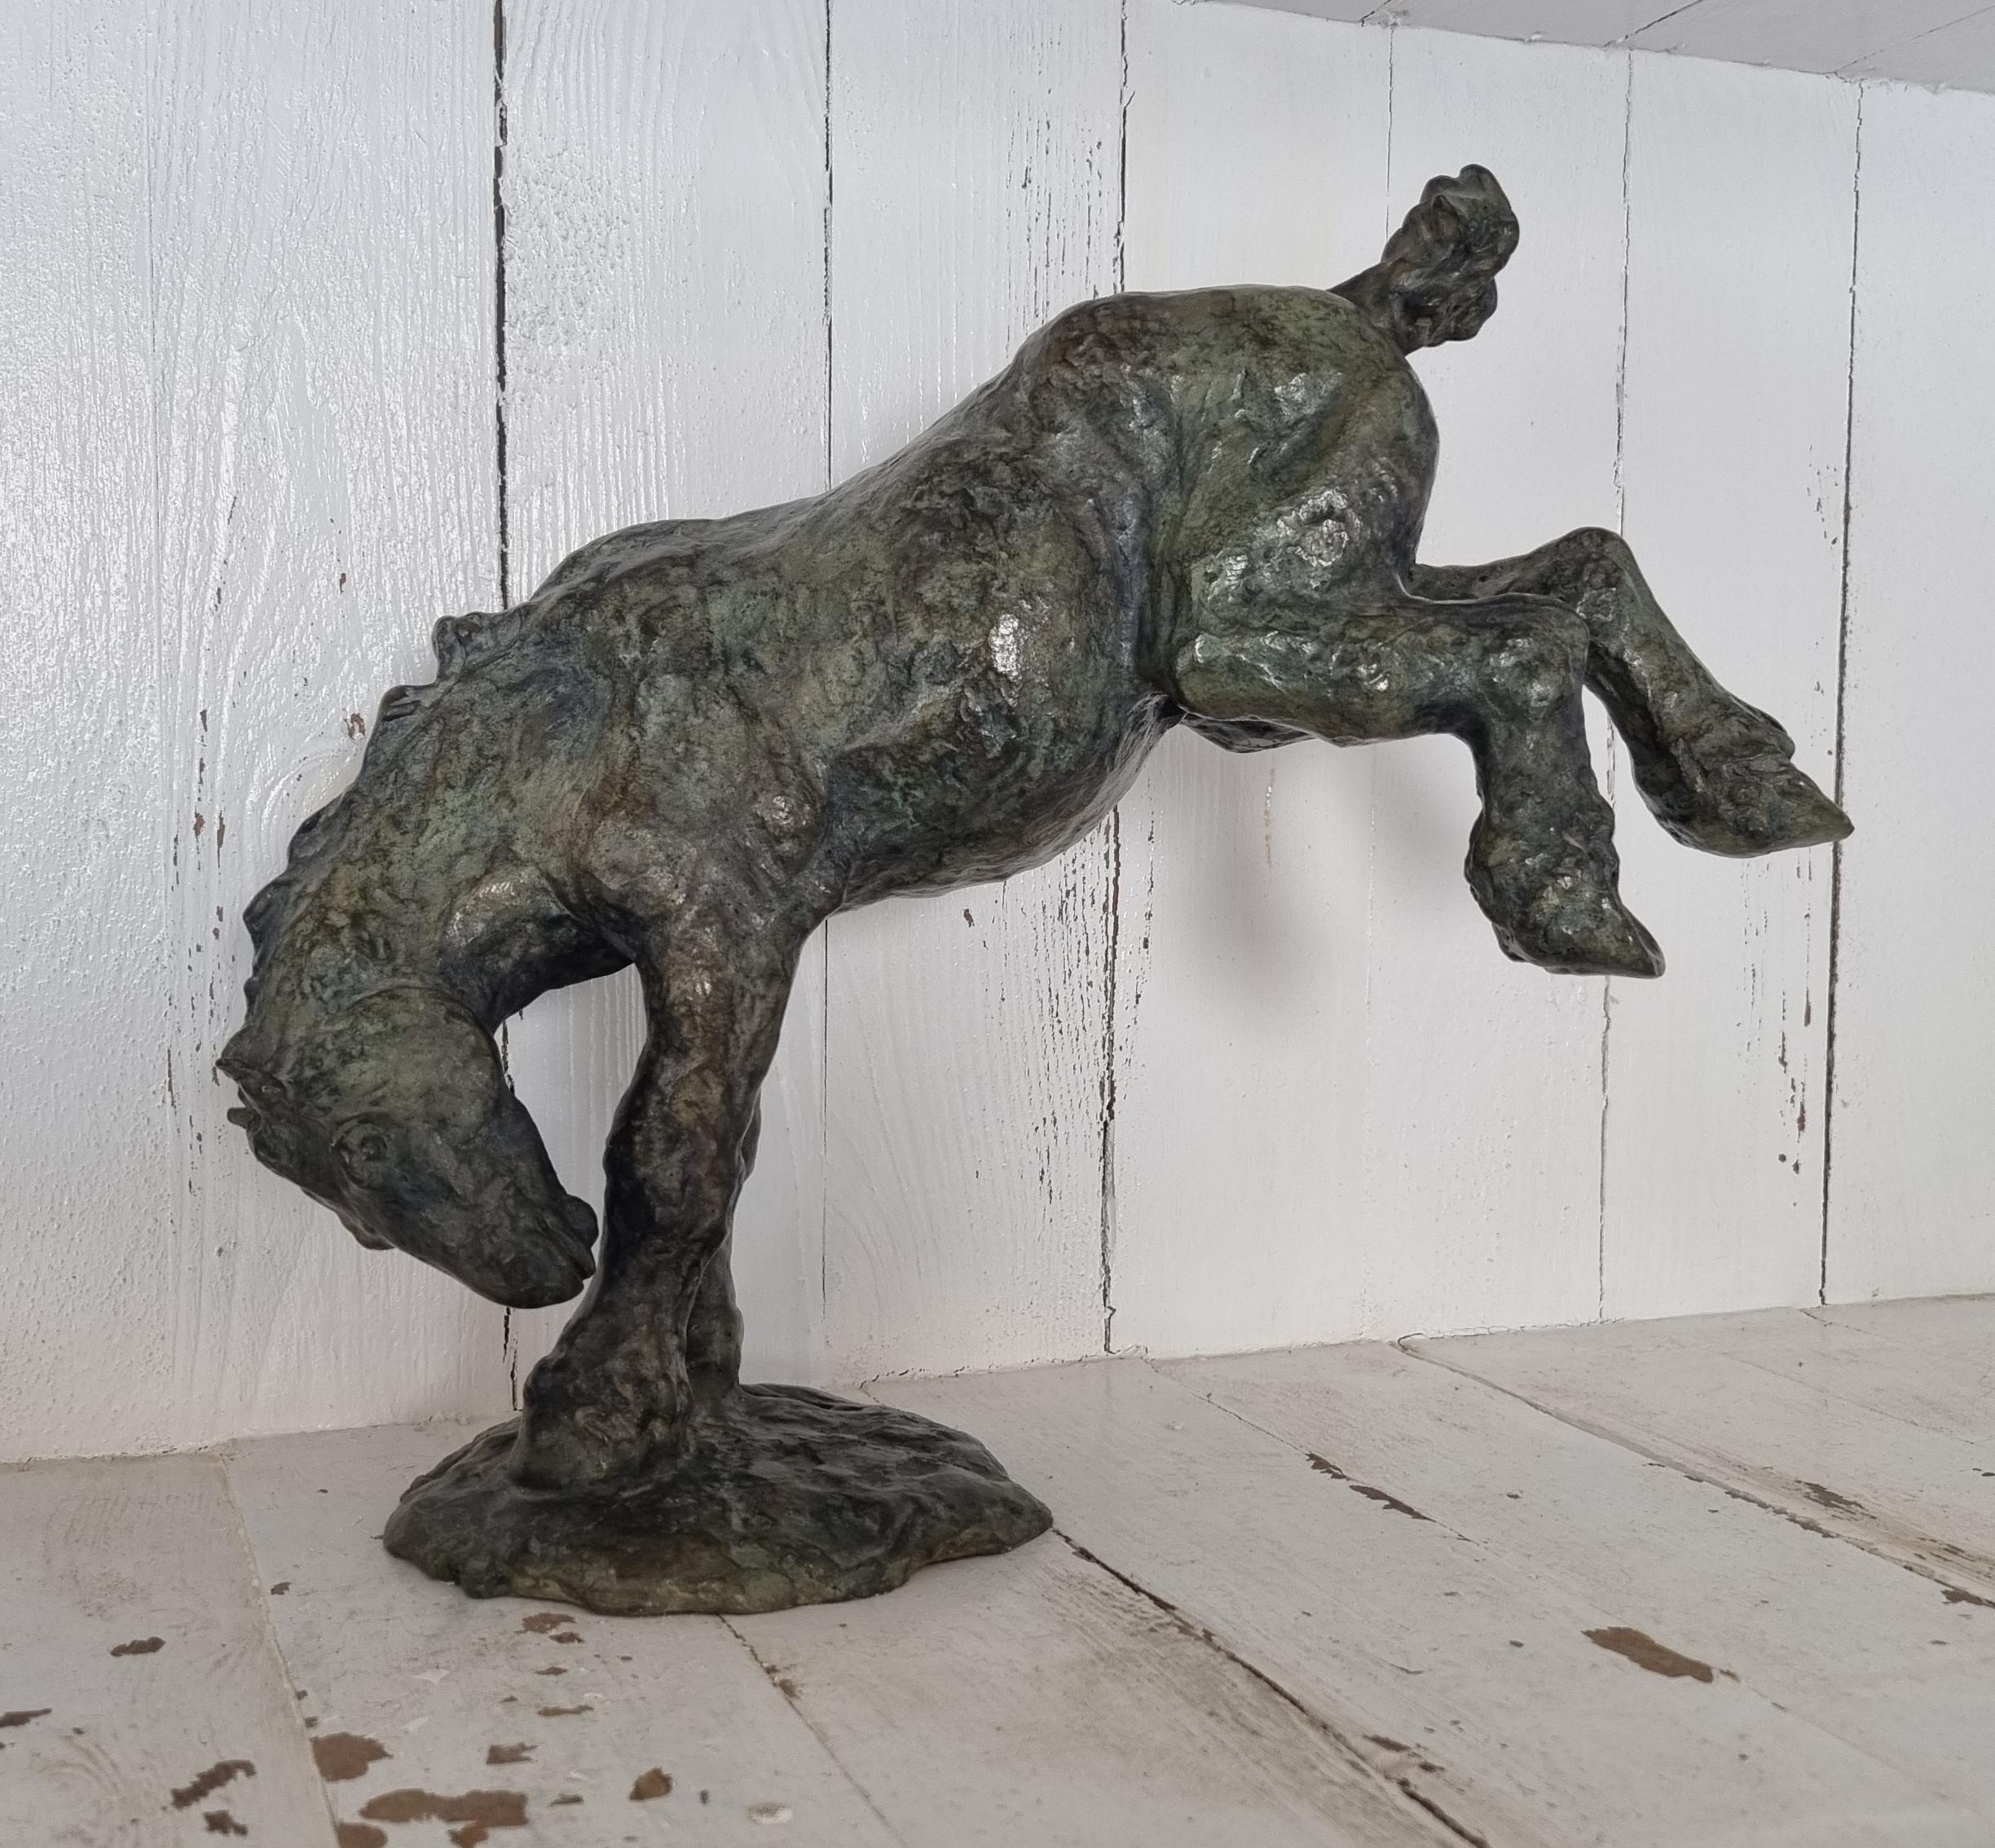 Bronze à la cire perdue 3/8. fondateur DELVAL. 

La sculptrice animalière Sophie MARTIN crée, à partir d'argile inerte, tout un règne animal vivant. Elle observe librement l'animal, capte et interprète un mouvement ; et le replace dans la nature et